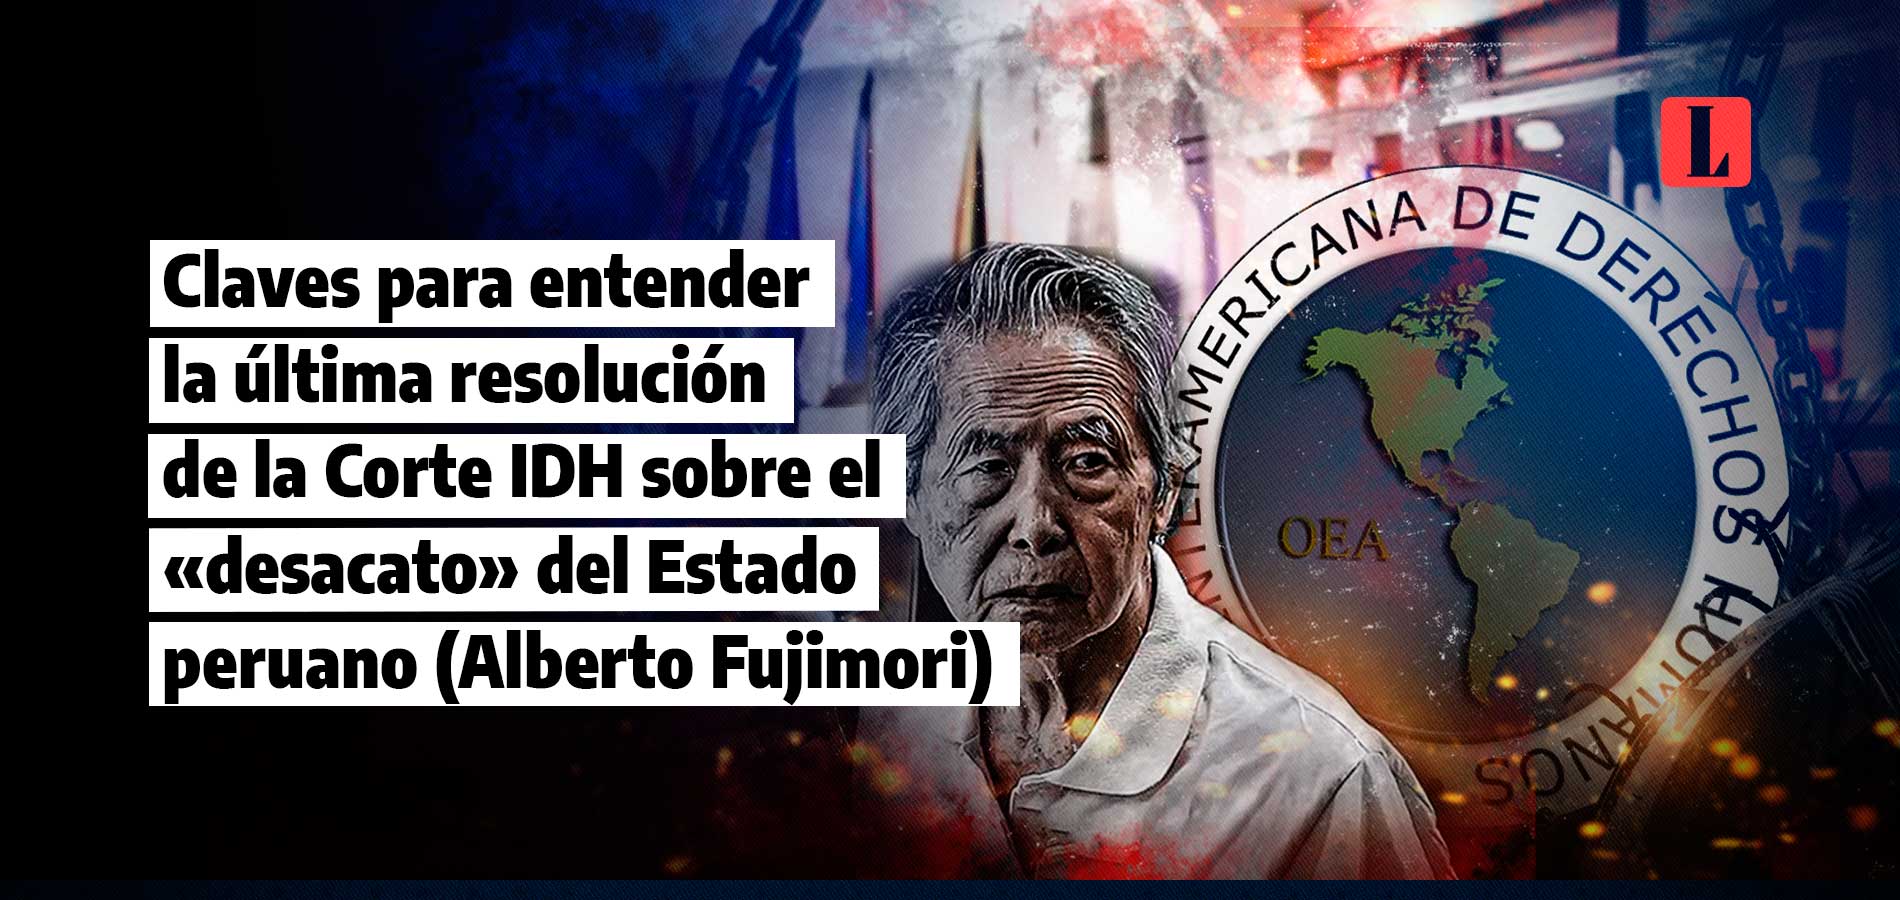 Claves para entender la última resolución de la Corte IDH sobre el «desacato» del Estado peruano (Alberto Fujimori)